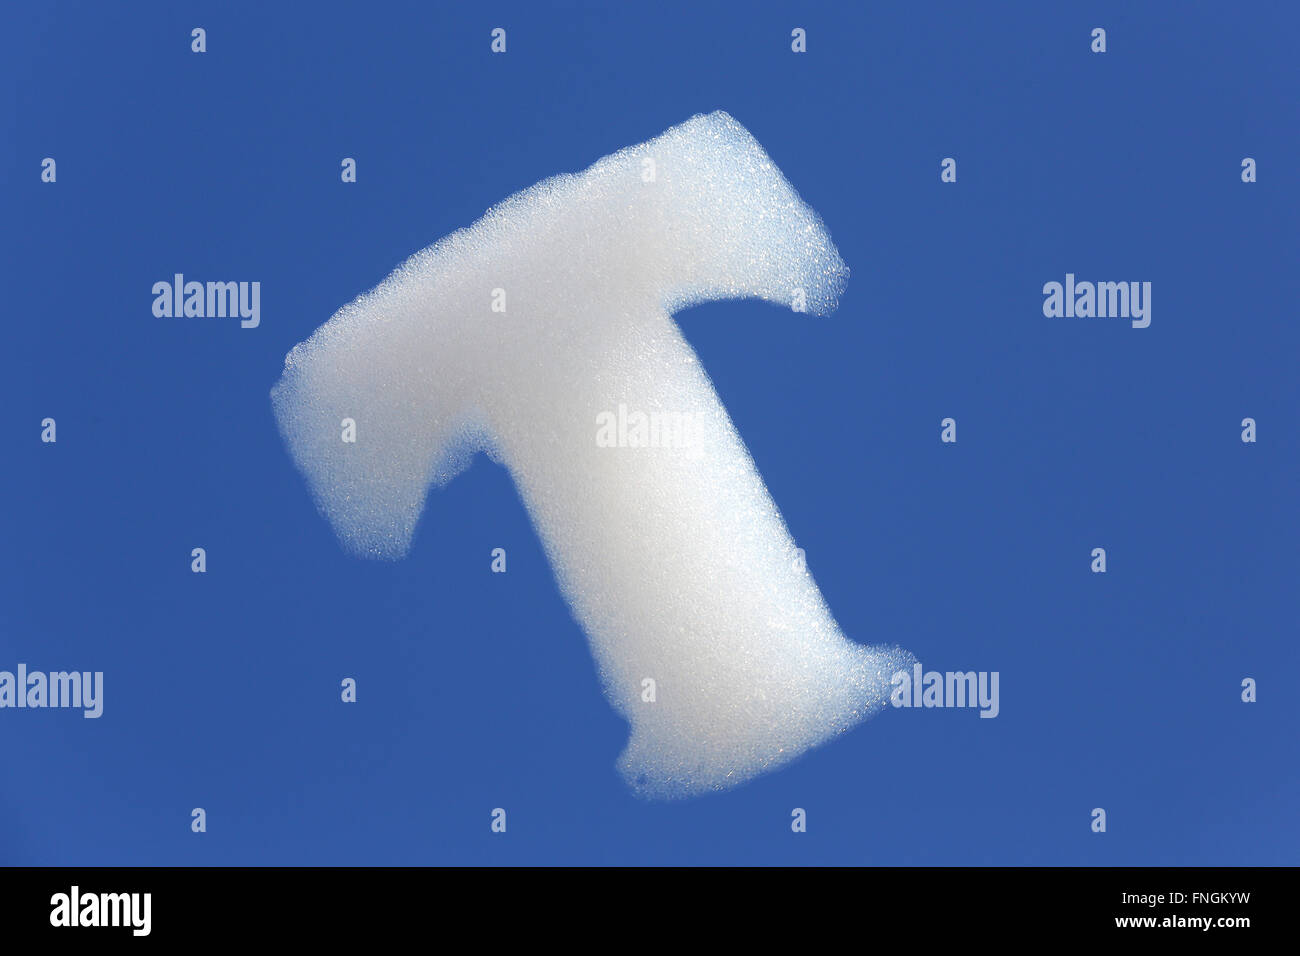 Seifenblasen in der Form eines t ragen in den Himmel in einer Aktion Telekoms Cloud computing bei der 2016 Digitaltechnik CeBIT am 14. März 2016 in Hannover. Stockfoto